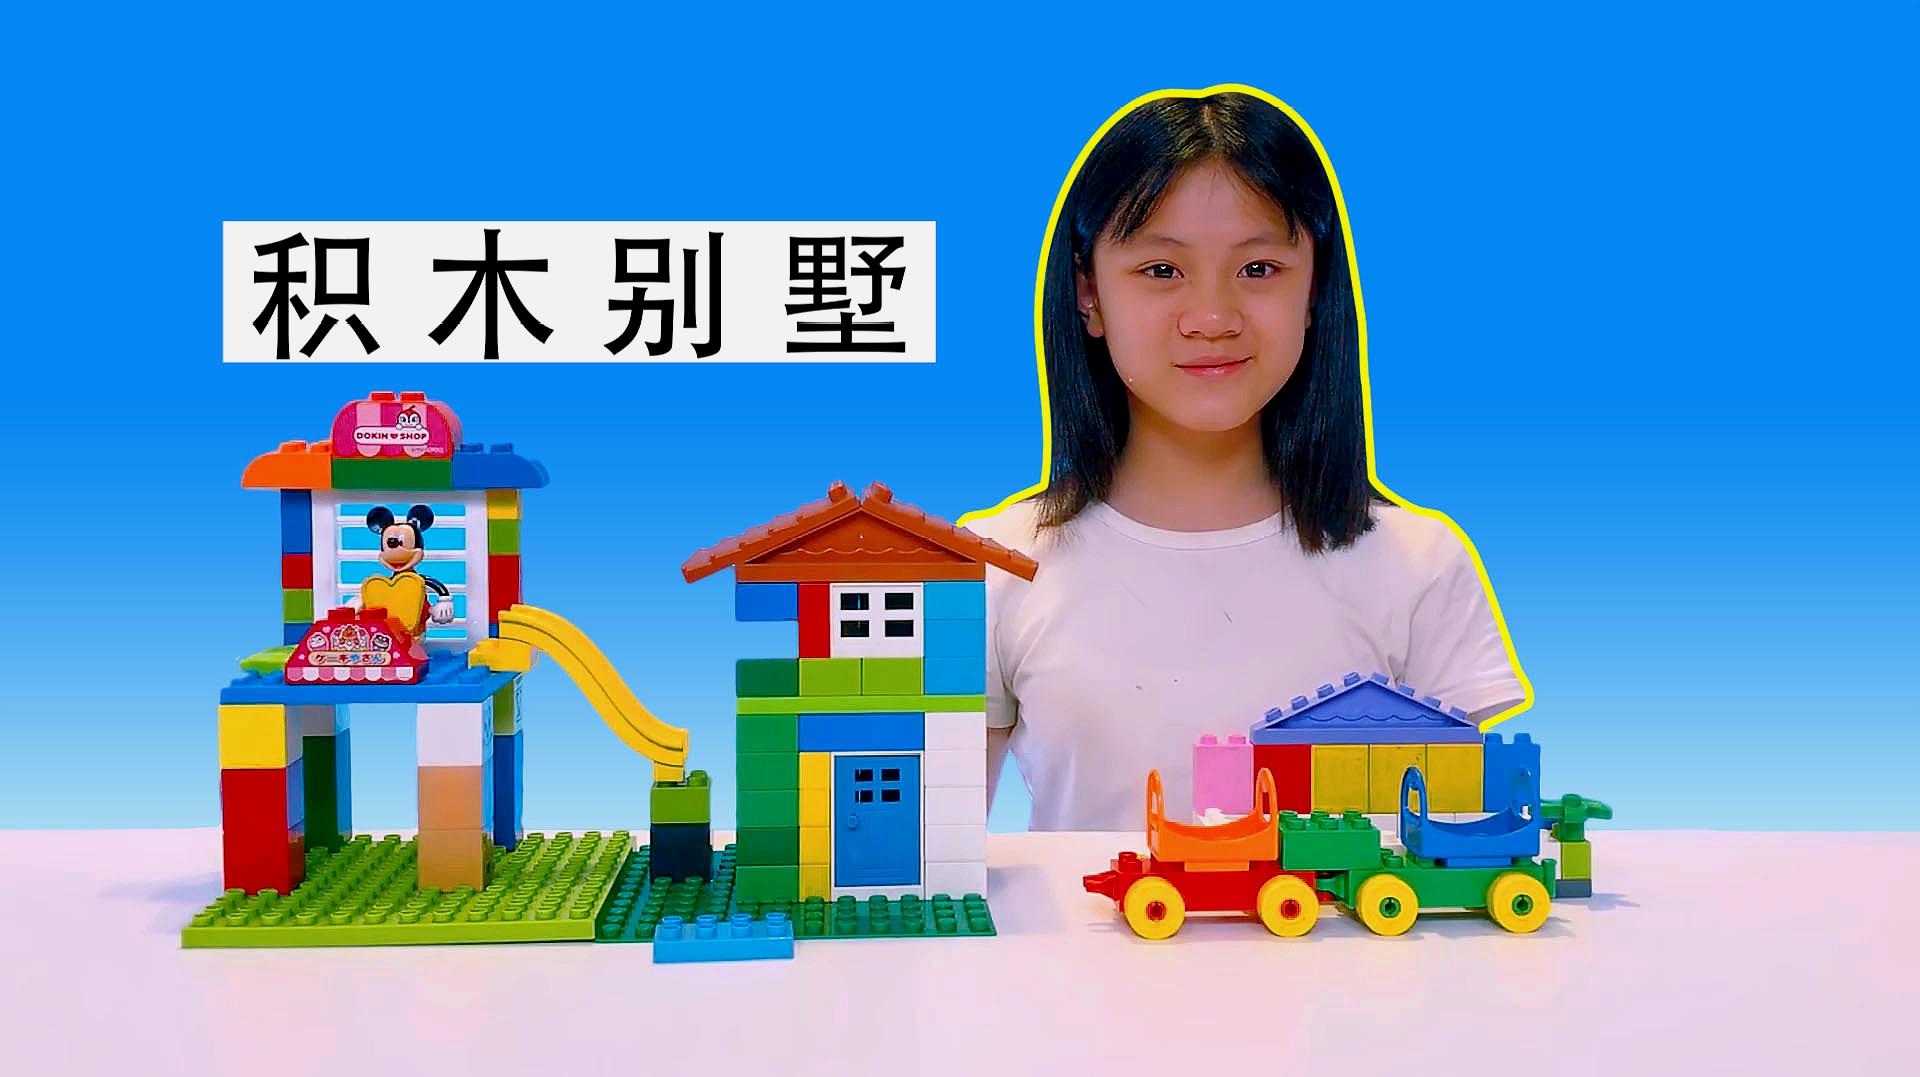 "百变玩具屋"之早教视频:拼装积木玩具